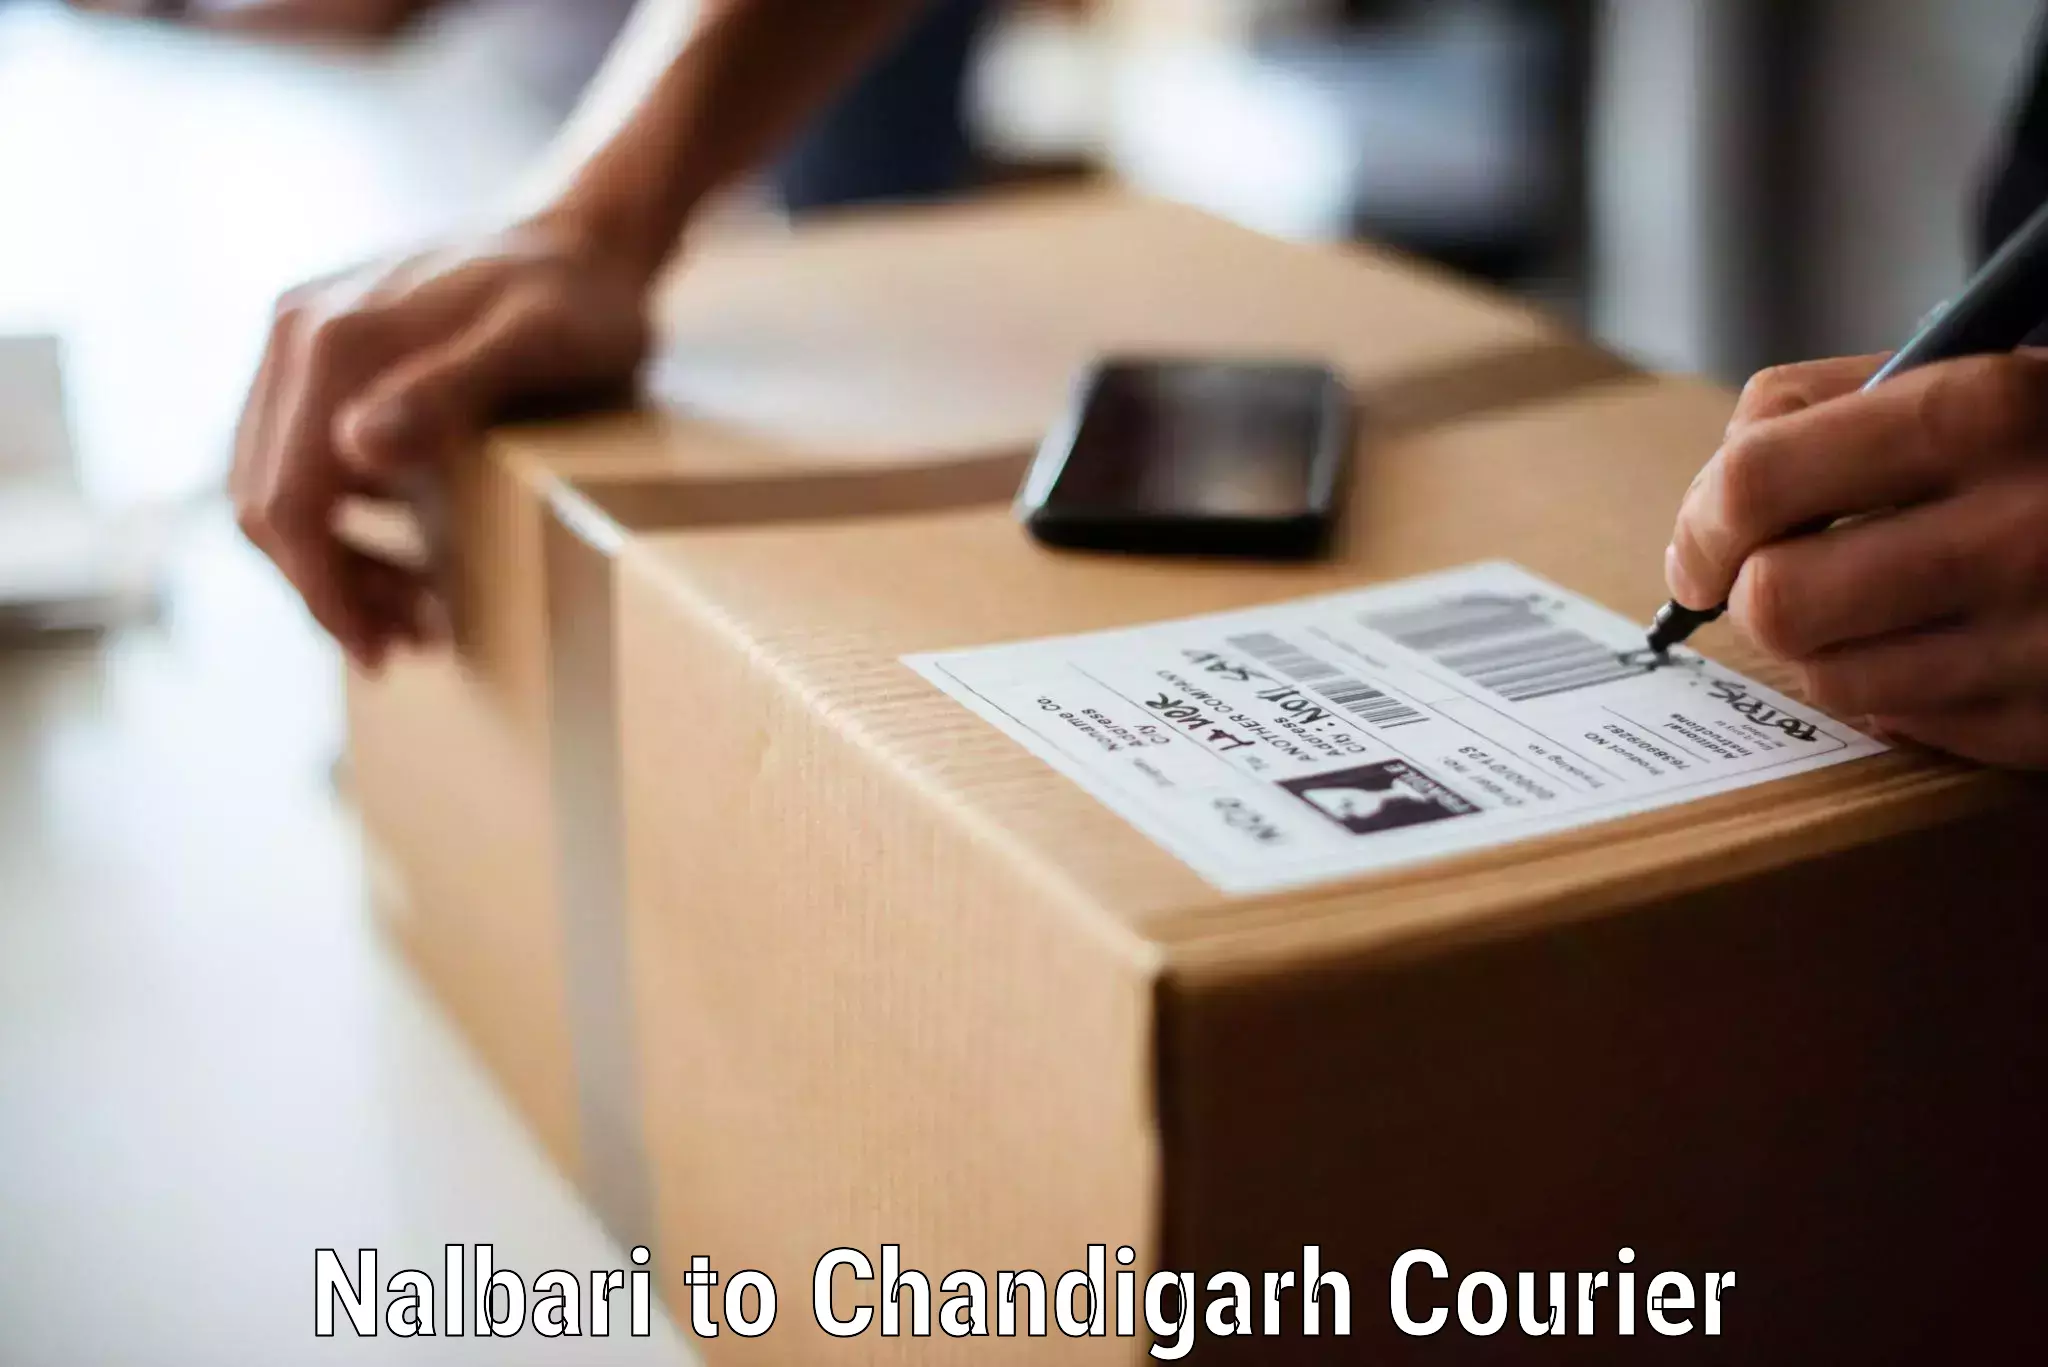 Efficient moving company Nalbari to Chandigarh